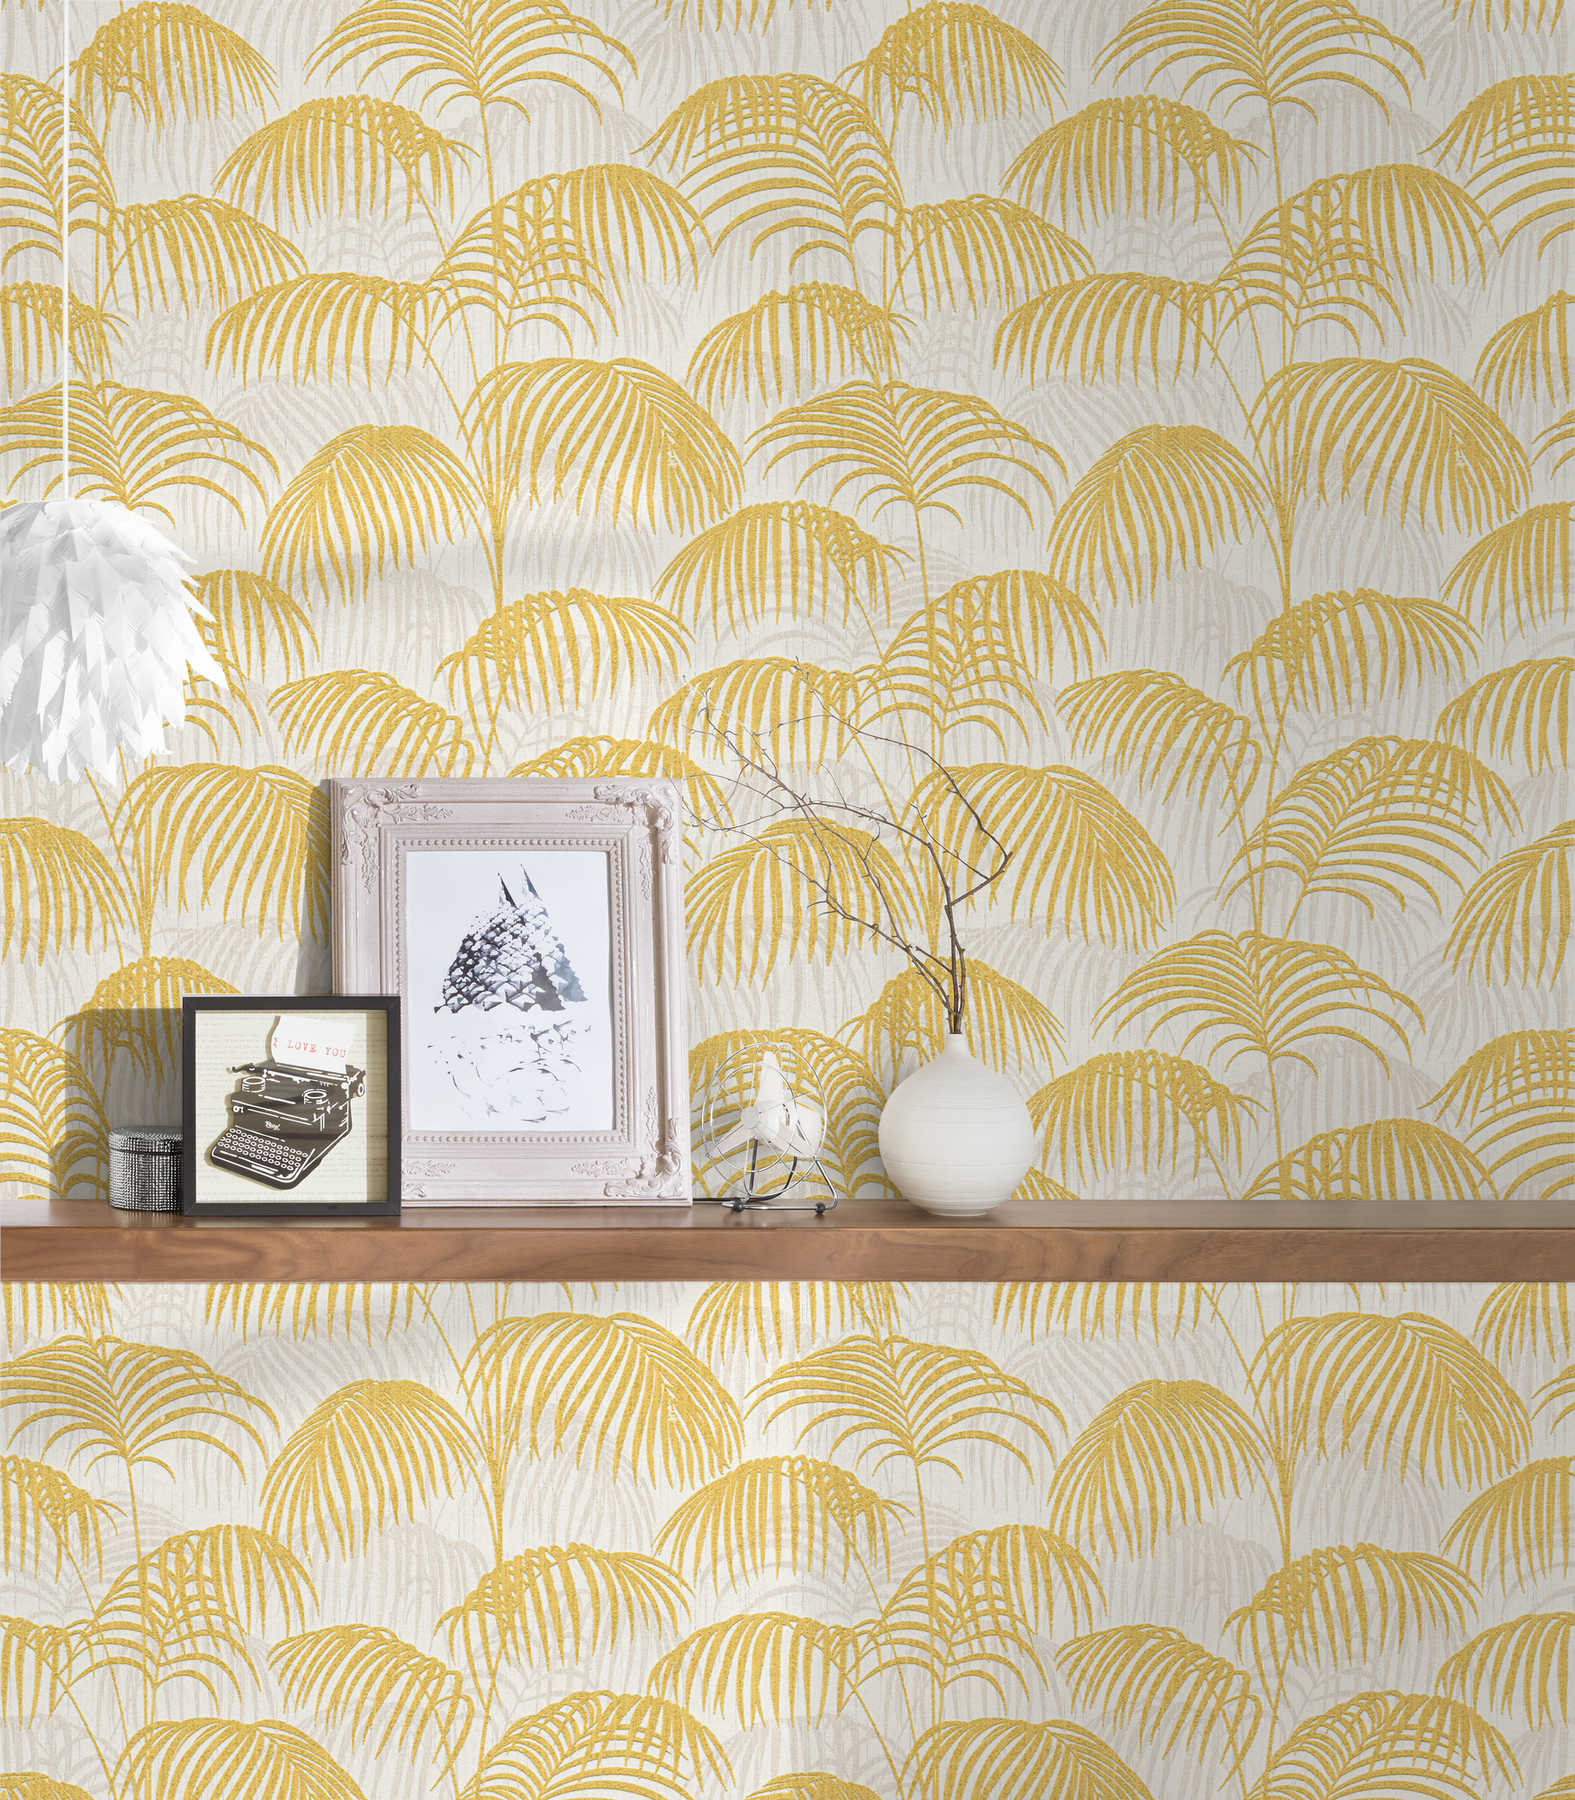             Palm behang met goud effect & structuur design - metallic, wit
        